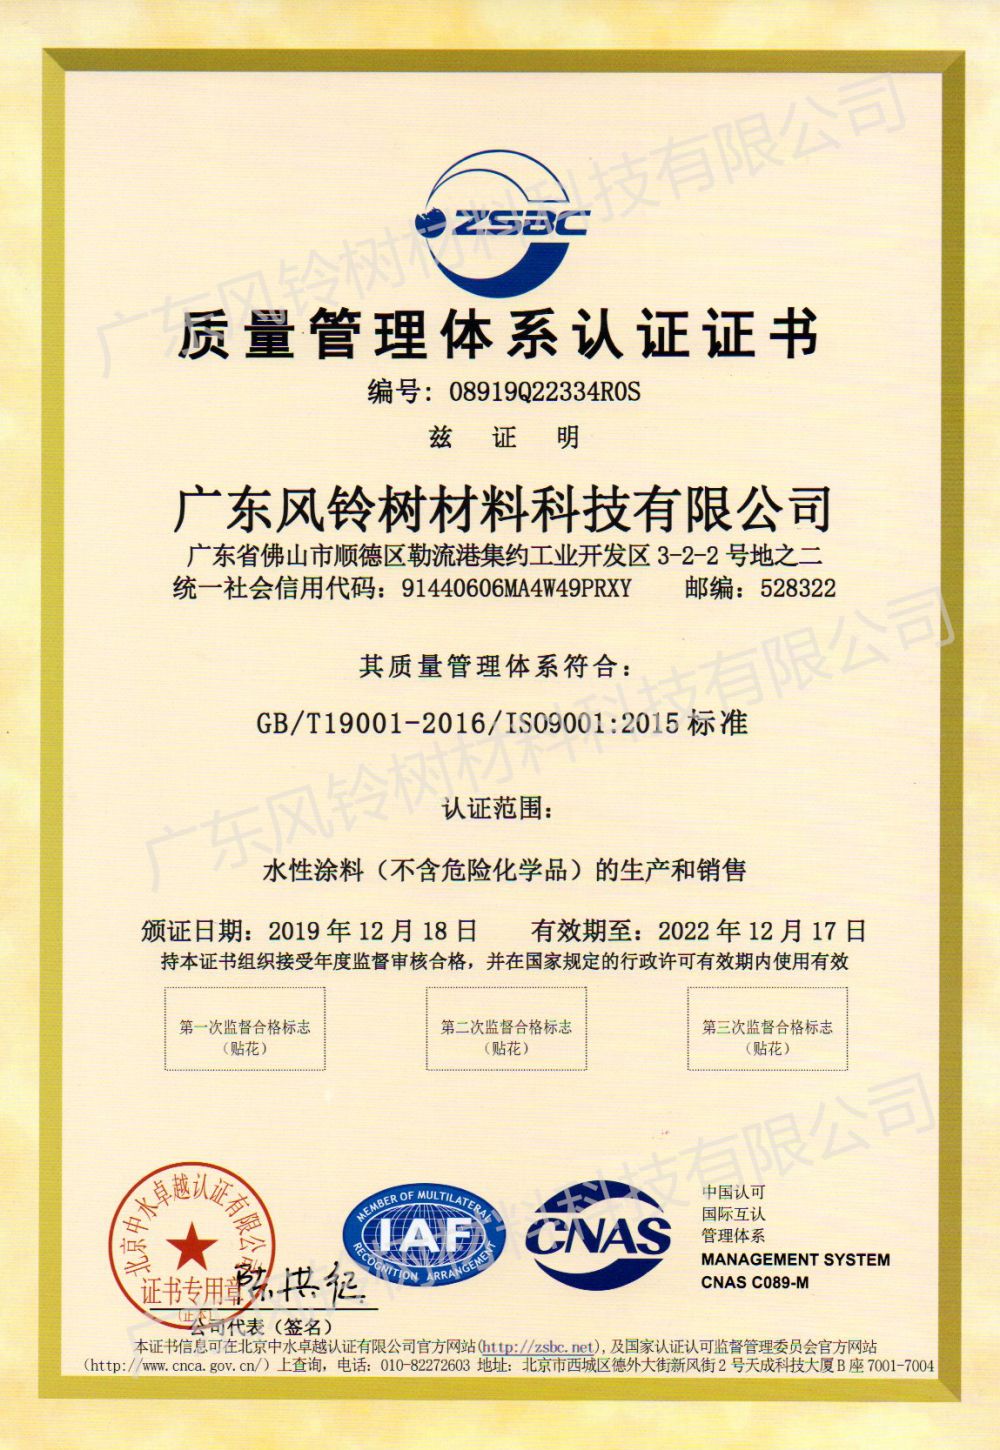 ISO90012015 Qualitéits Management System Zertifizéierung